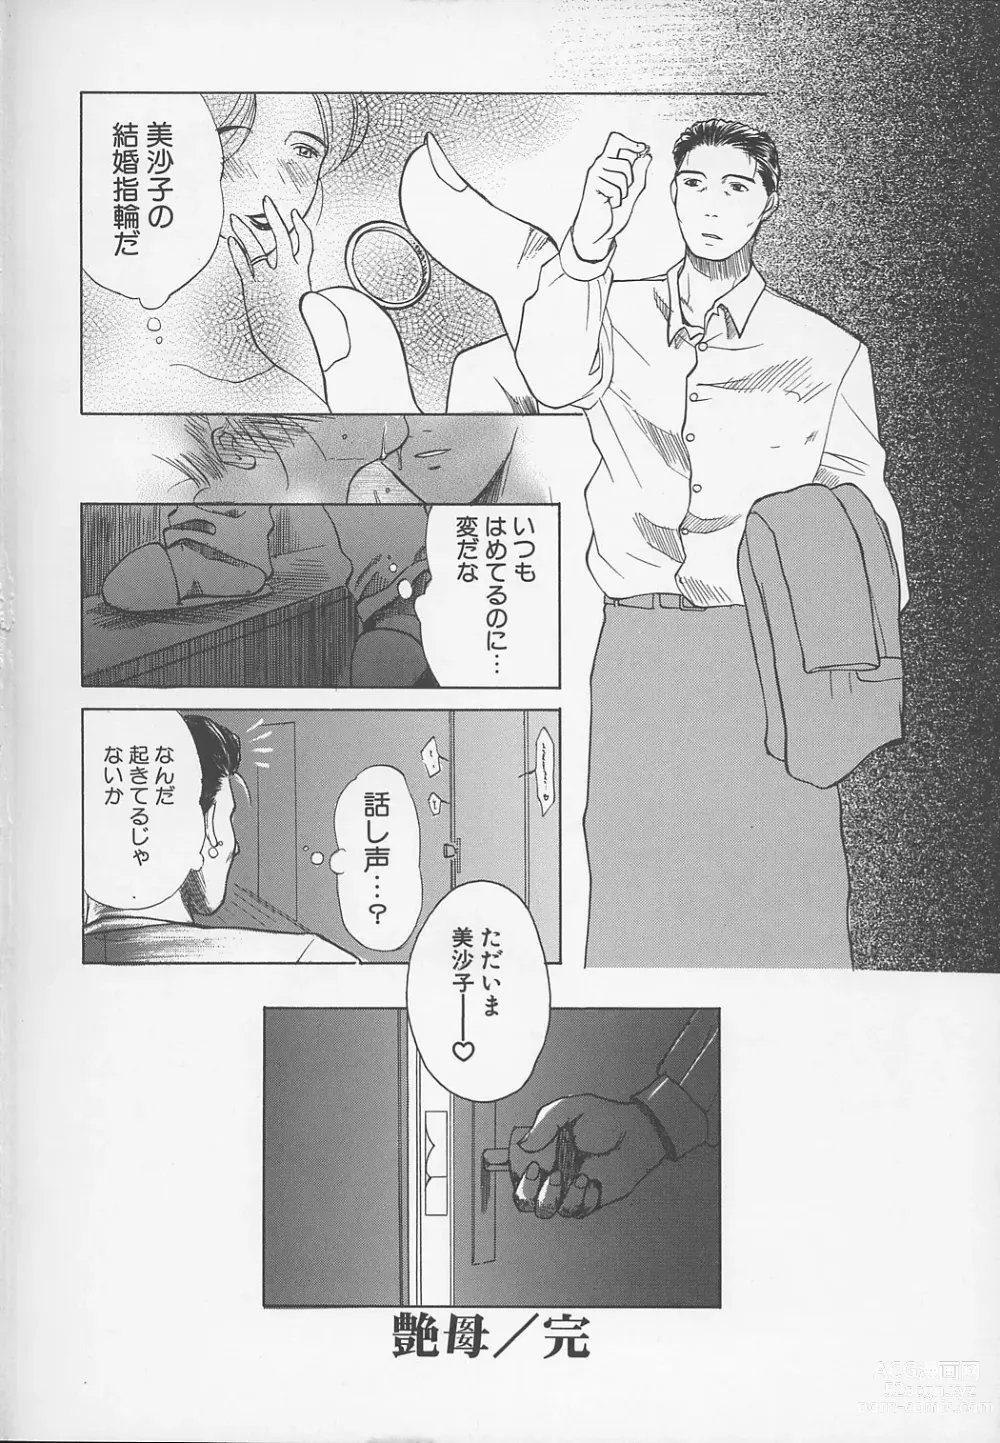 Page 251 of manga Enbo -Kanzenban-